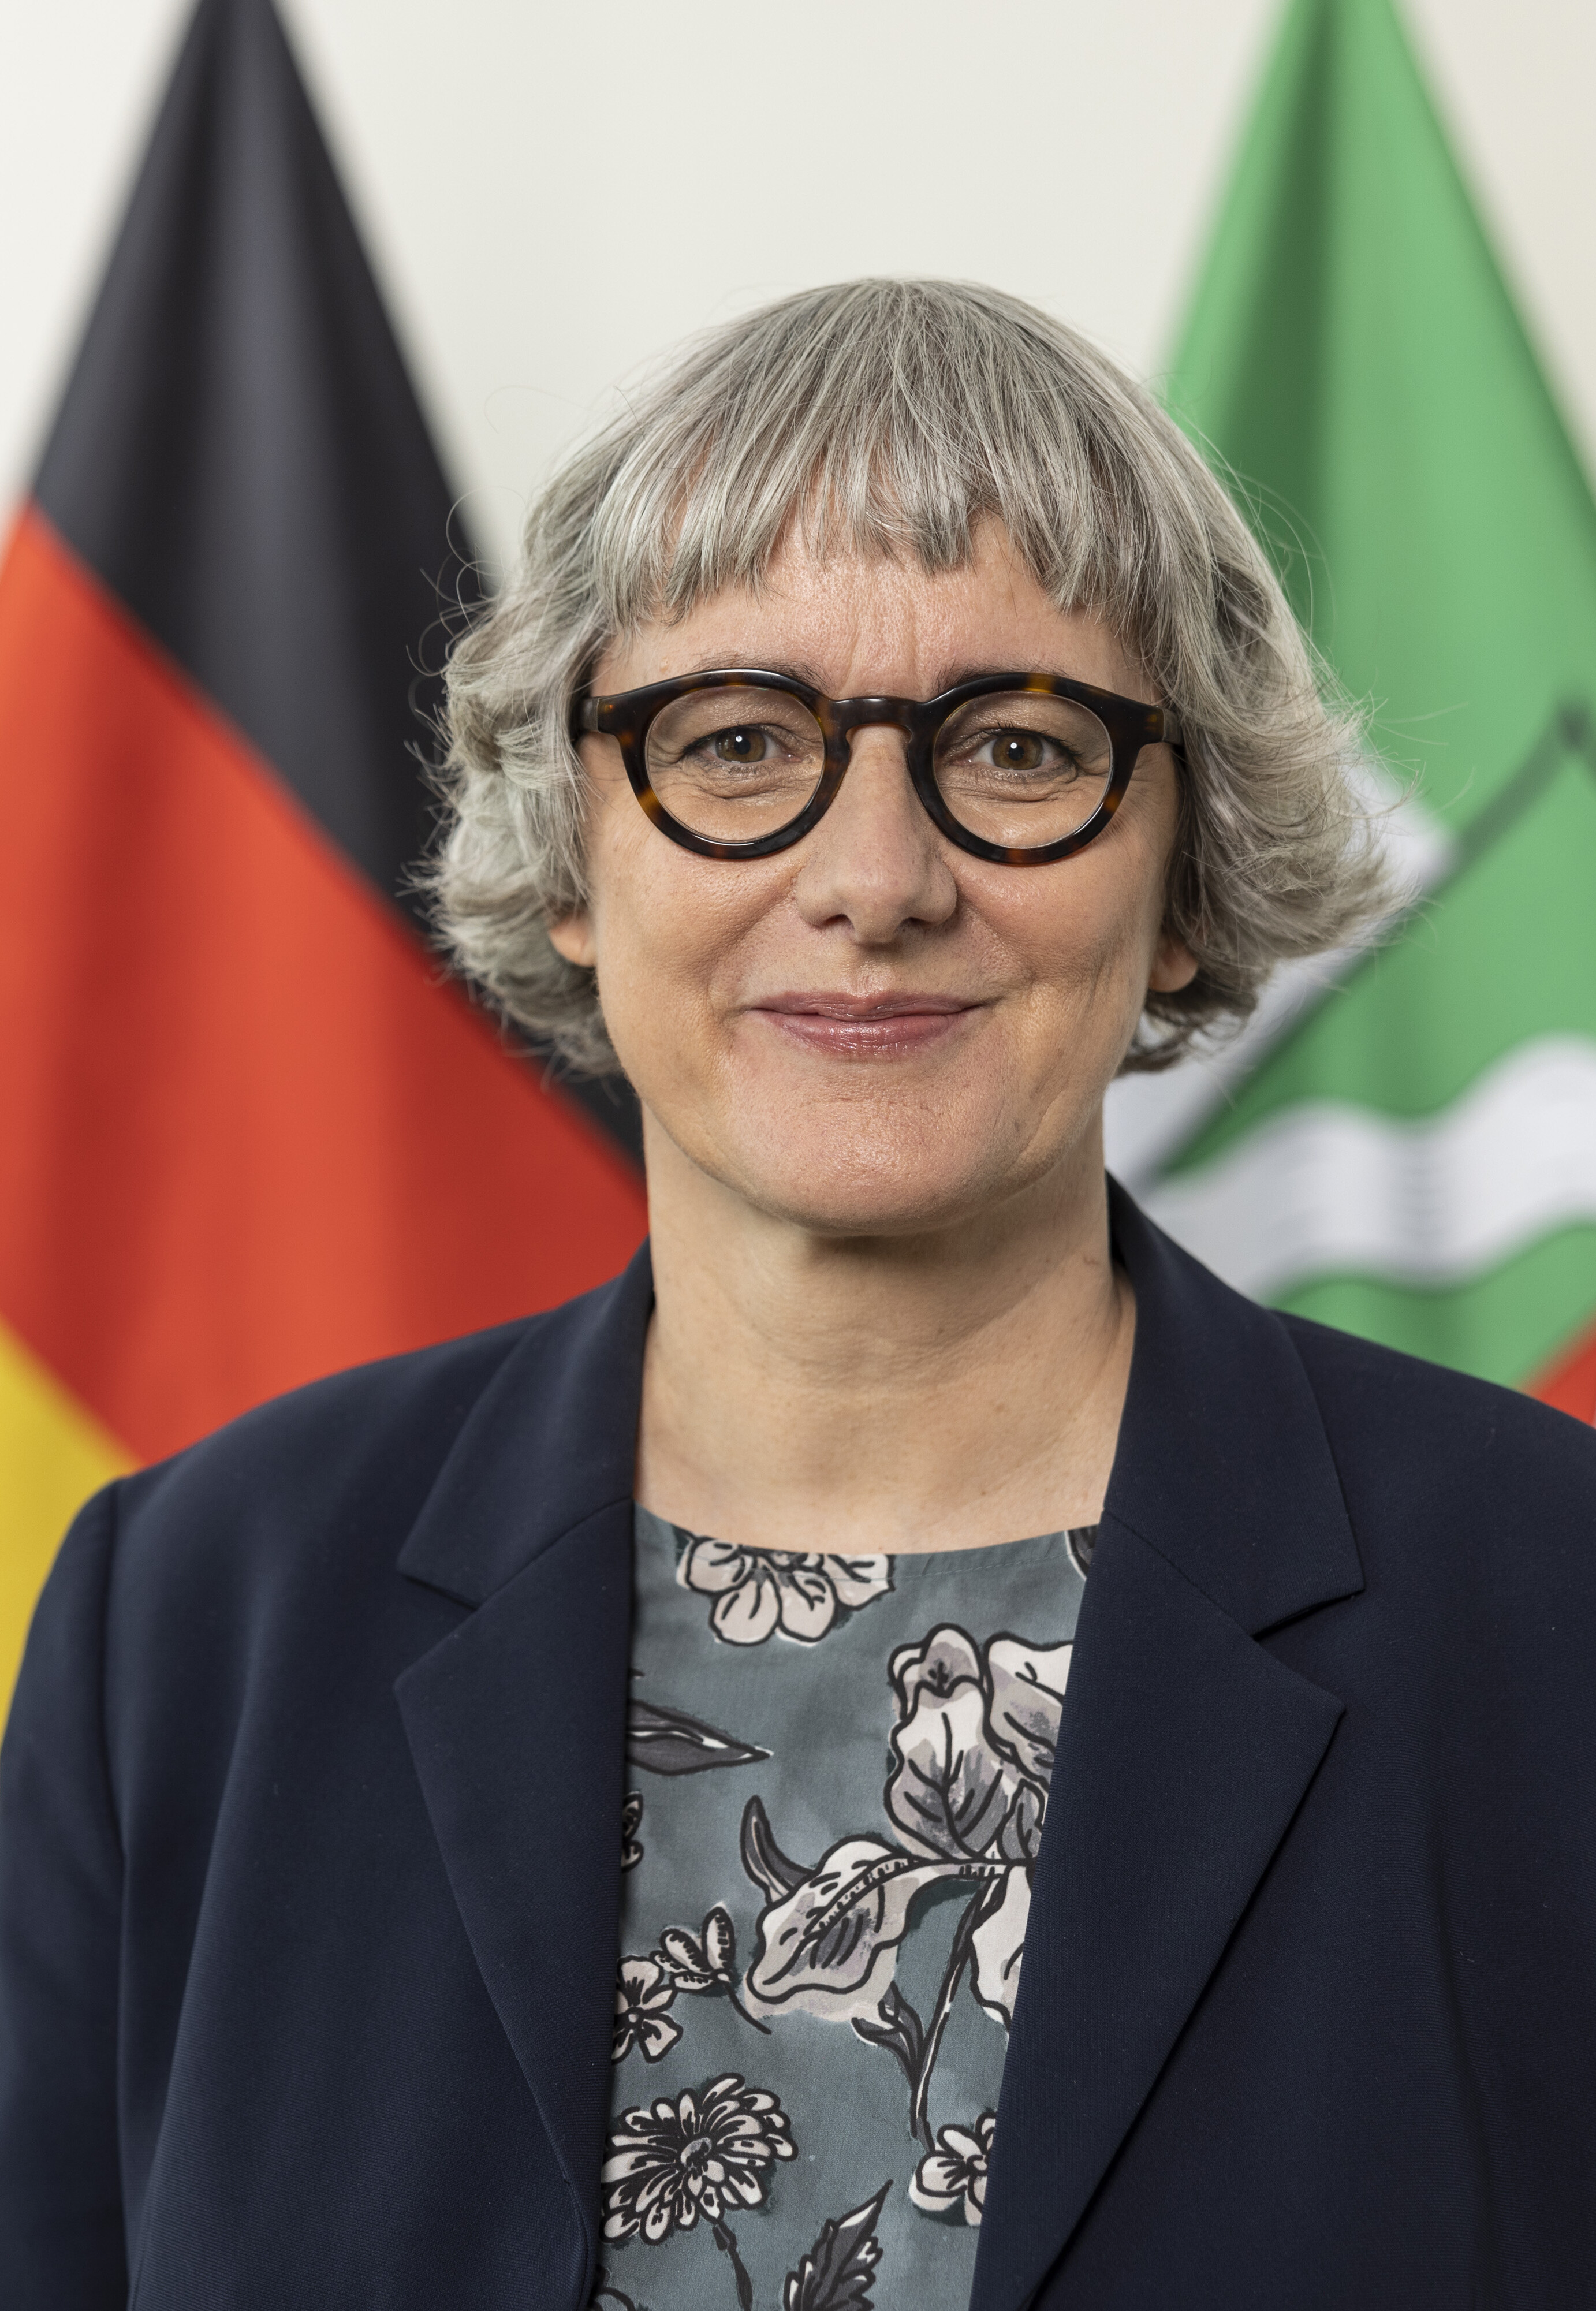 Staatssekretärin im Ministerium für Wirtschaft, Industrie, Klimaschutz und Energie des Landes Nordrhein-Westfalen, Silke Krebs  